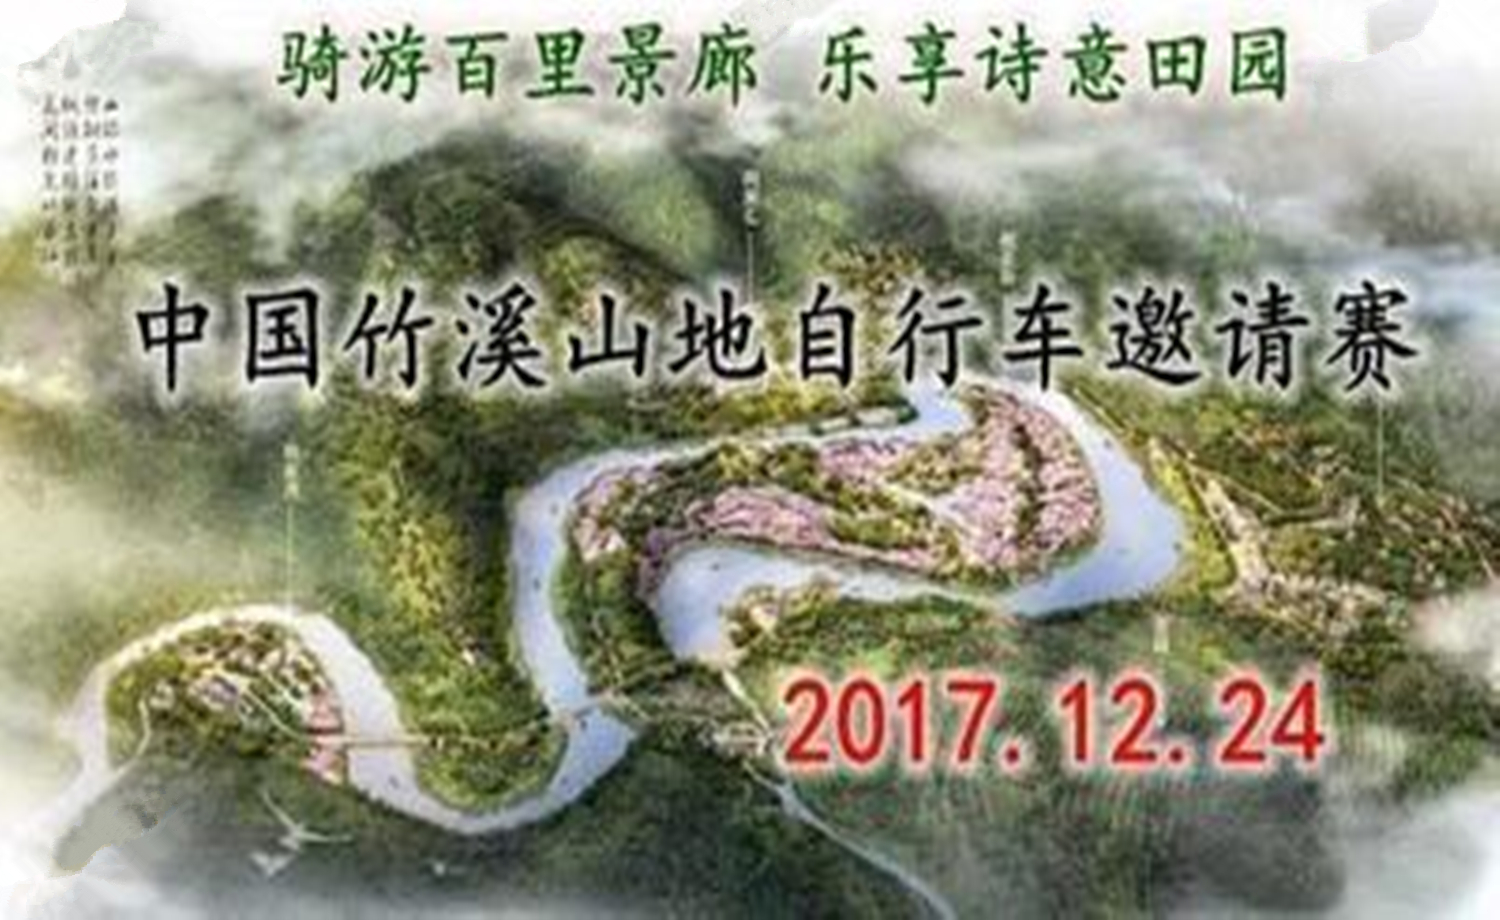 中国竹溪山地自行车邀请赛